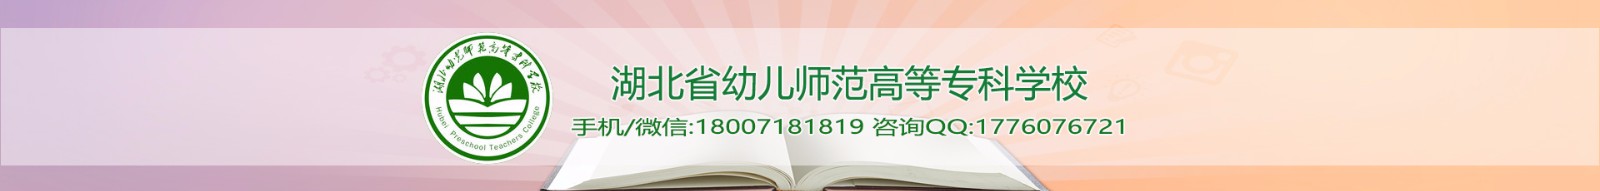 湖北省实验幼儿师范学校（湖北省幼儿教师培训中心）公司介绍